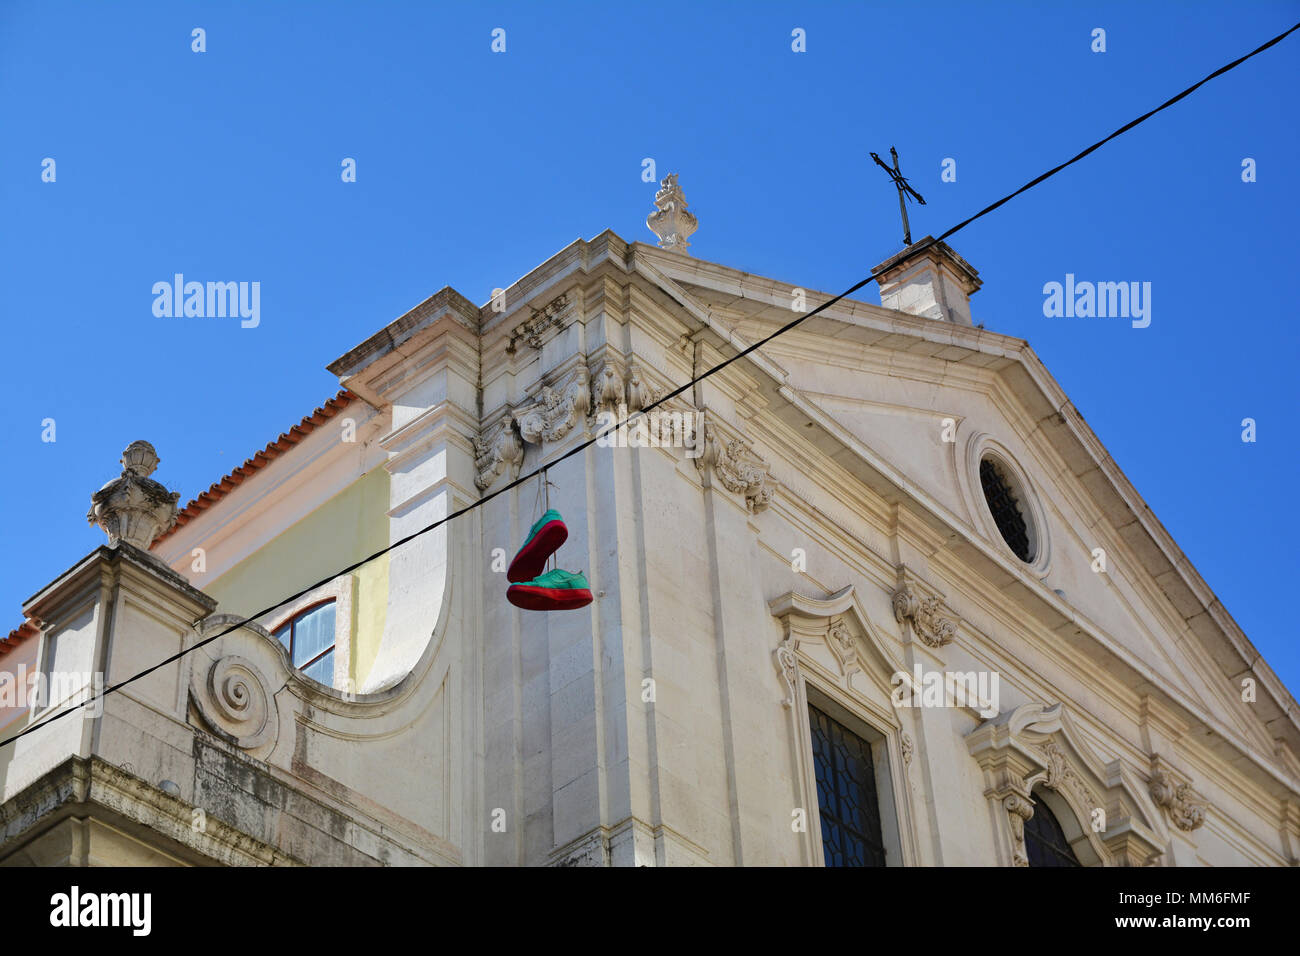 Traditionelle Schuhe auflegt und historischen Gebäuden mit Fassaden mit gemalten portugiesischen Kacheln bedeckt, Chiado, Lissabon, Portugal Stockfoto